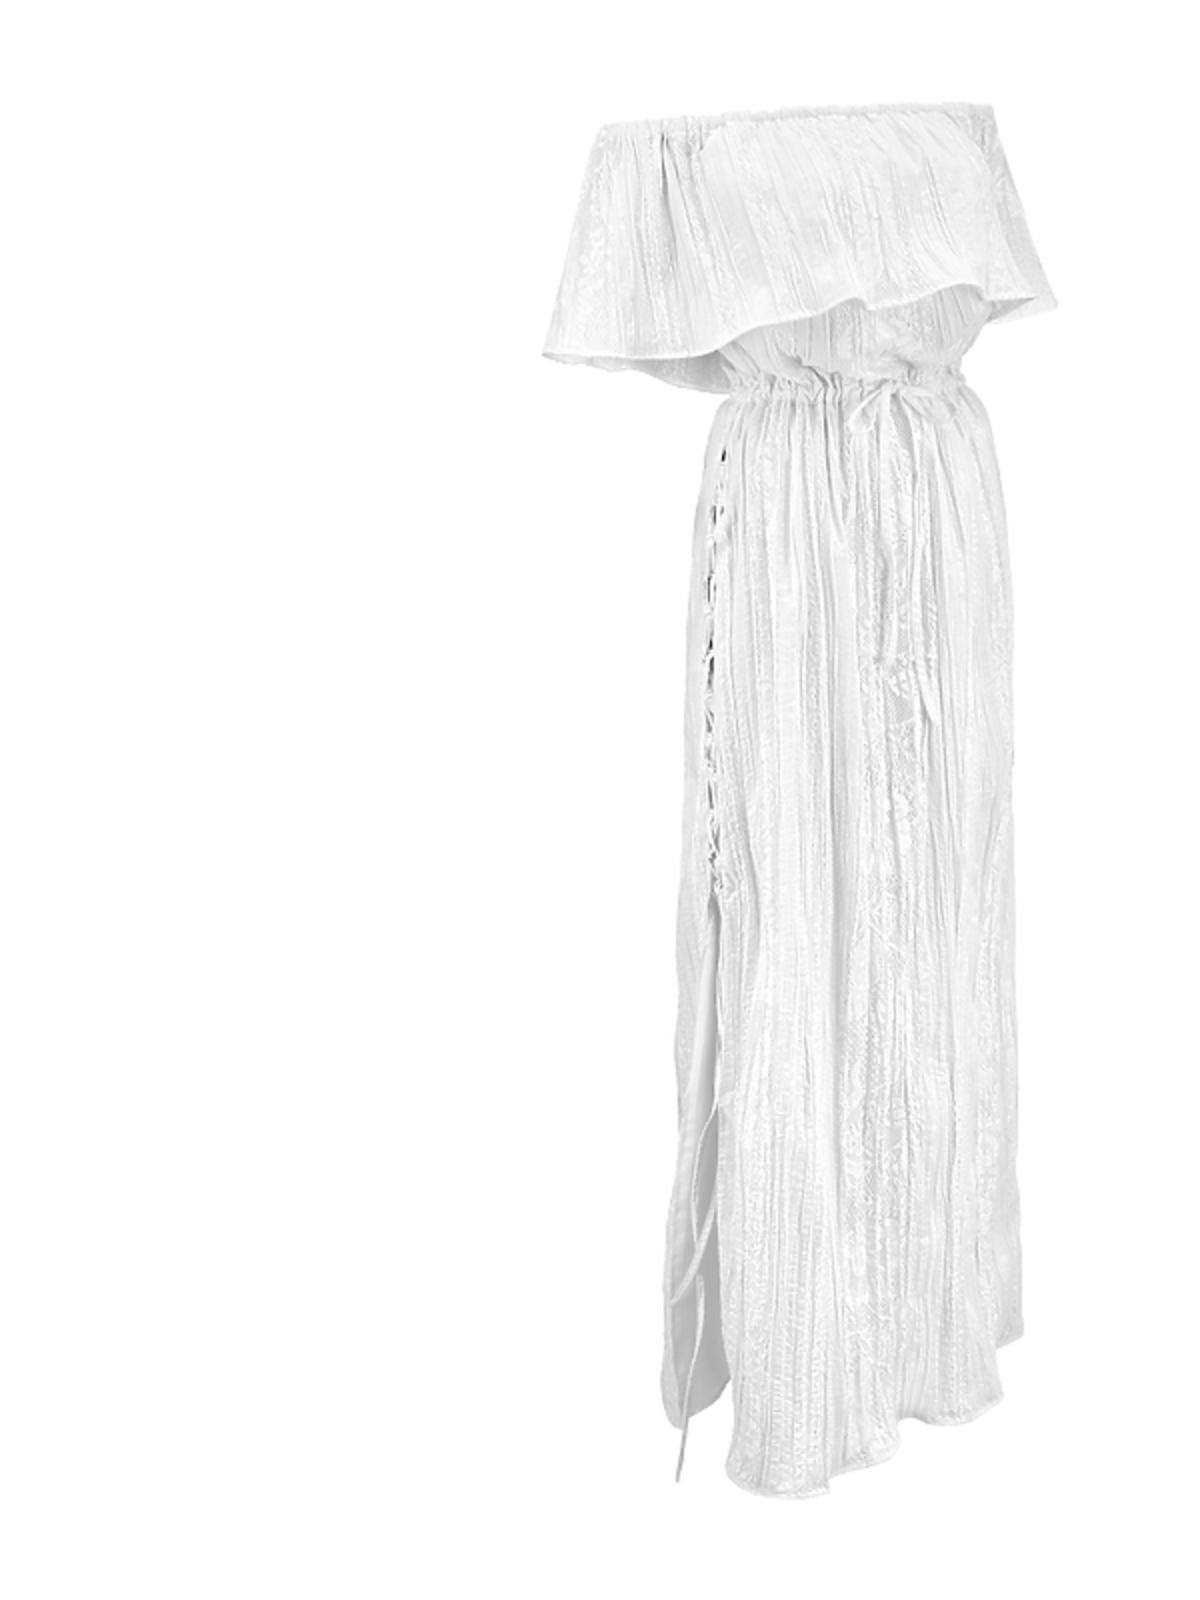 MARLU biała, asymetryczna sukienka z kwiatowym wzorem 1190 zł